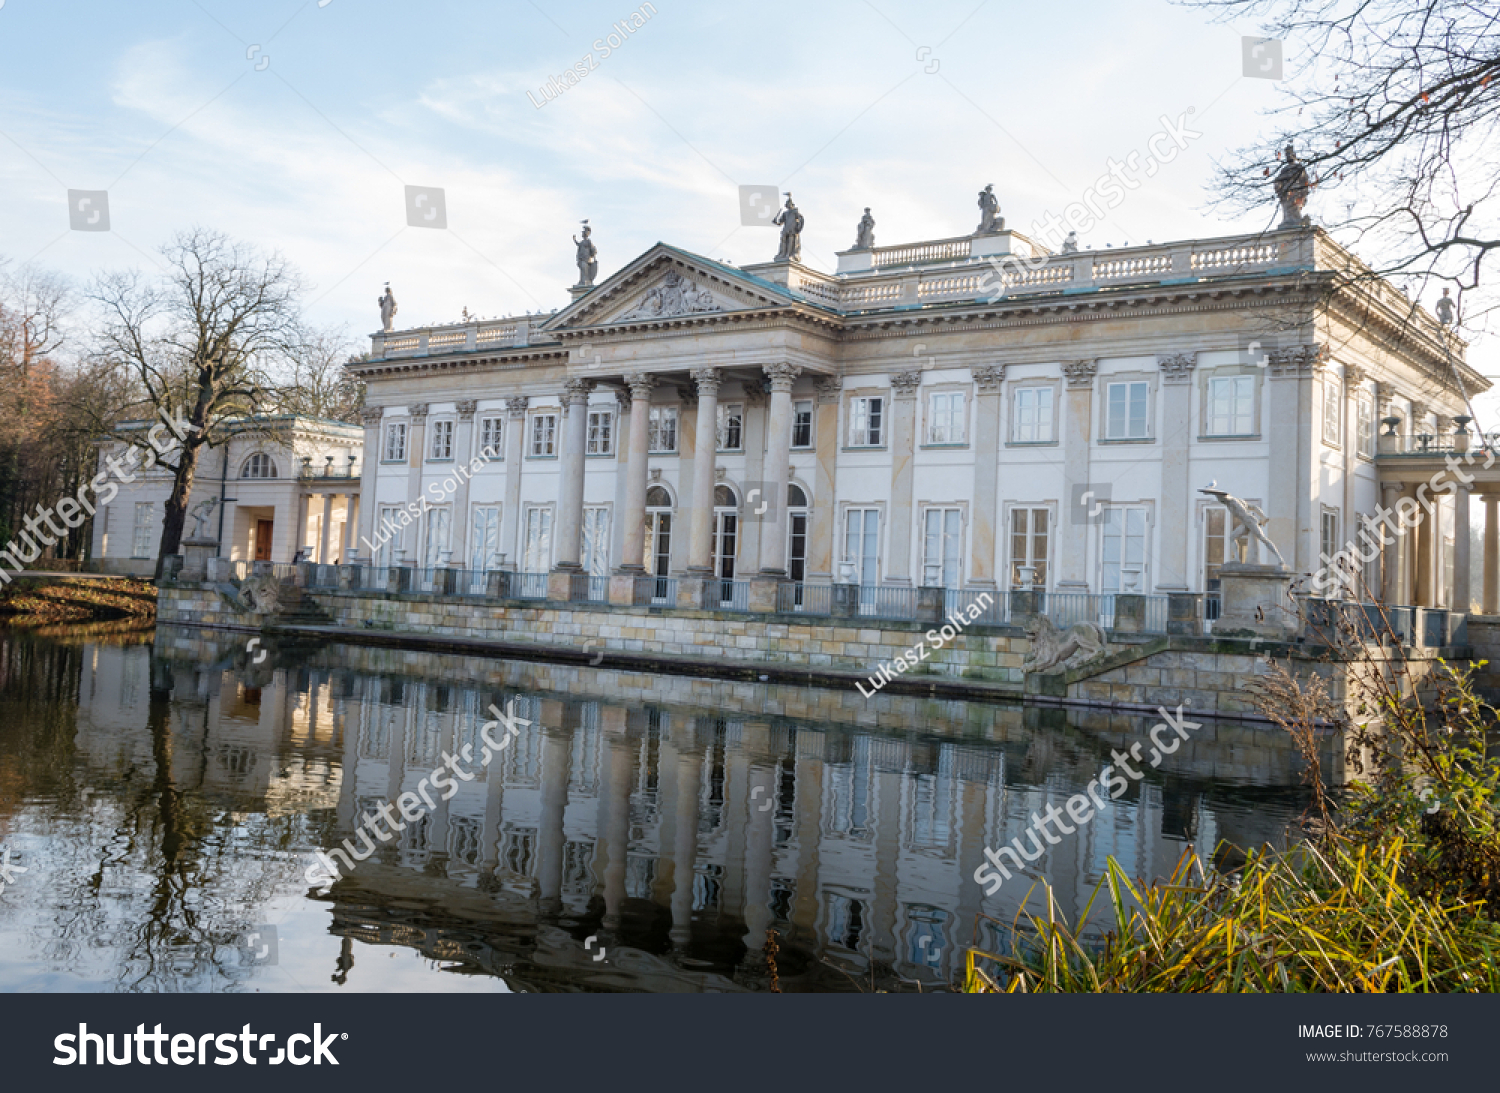 Historic palace by the lake during sunny fall day, Lazienki Krolewskie Warszawa Poland #767588878